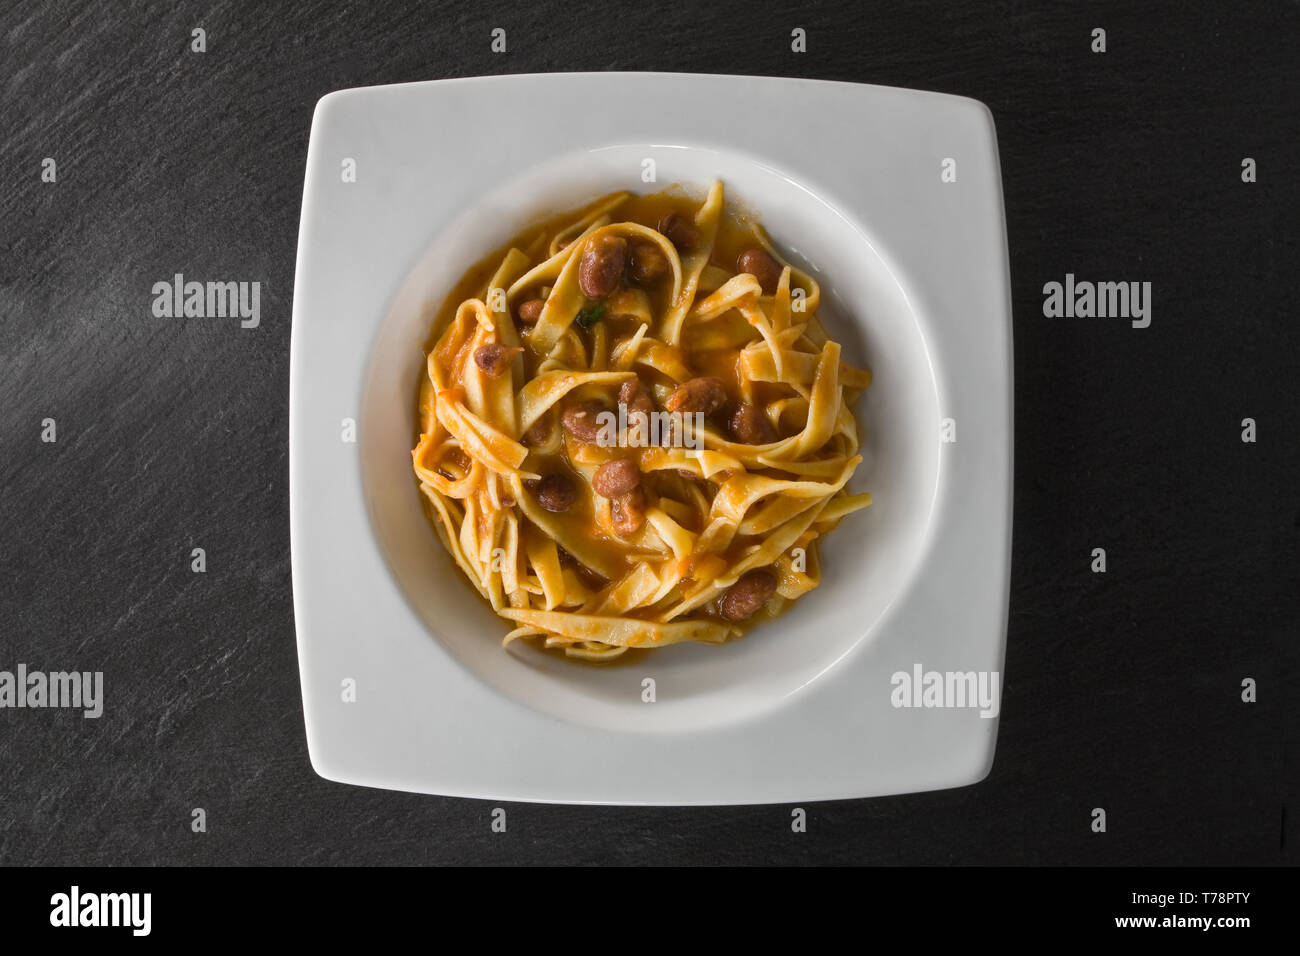 Piatto di tagliatelle condite con ragù alla bolognese. [Ita] un piatto di tagliatelle condite con ragù (ragù). Foto Stock